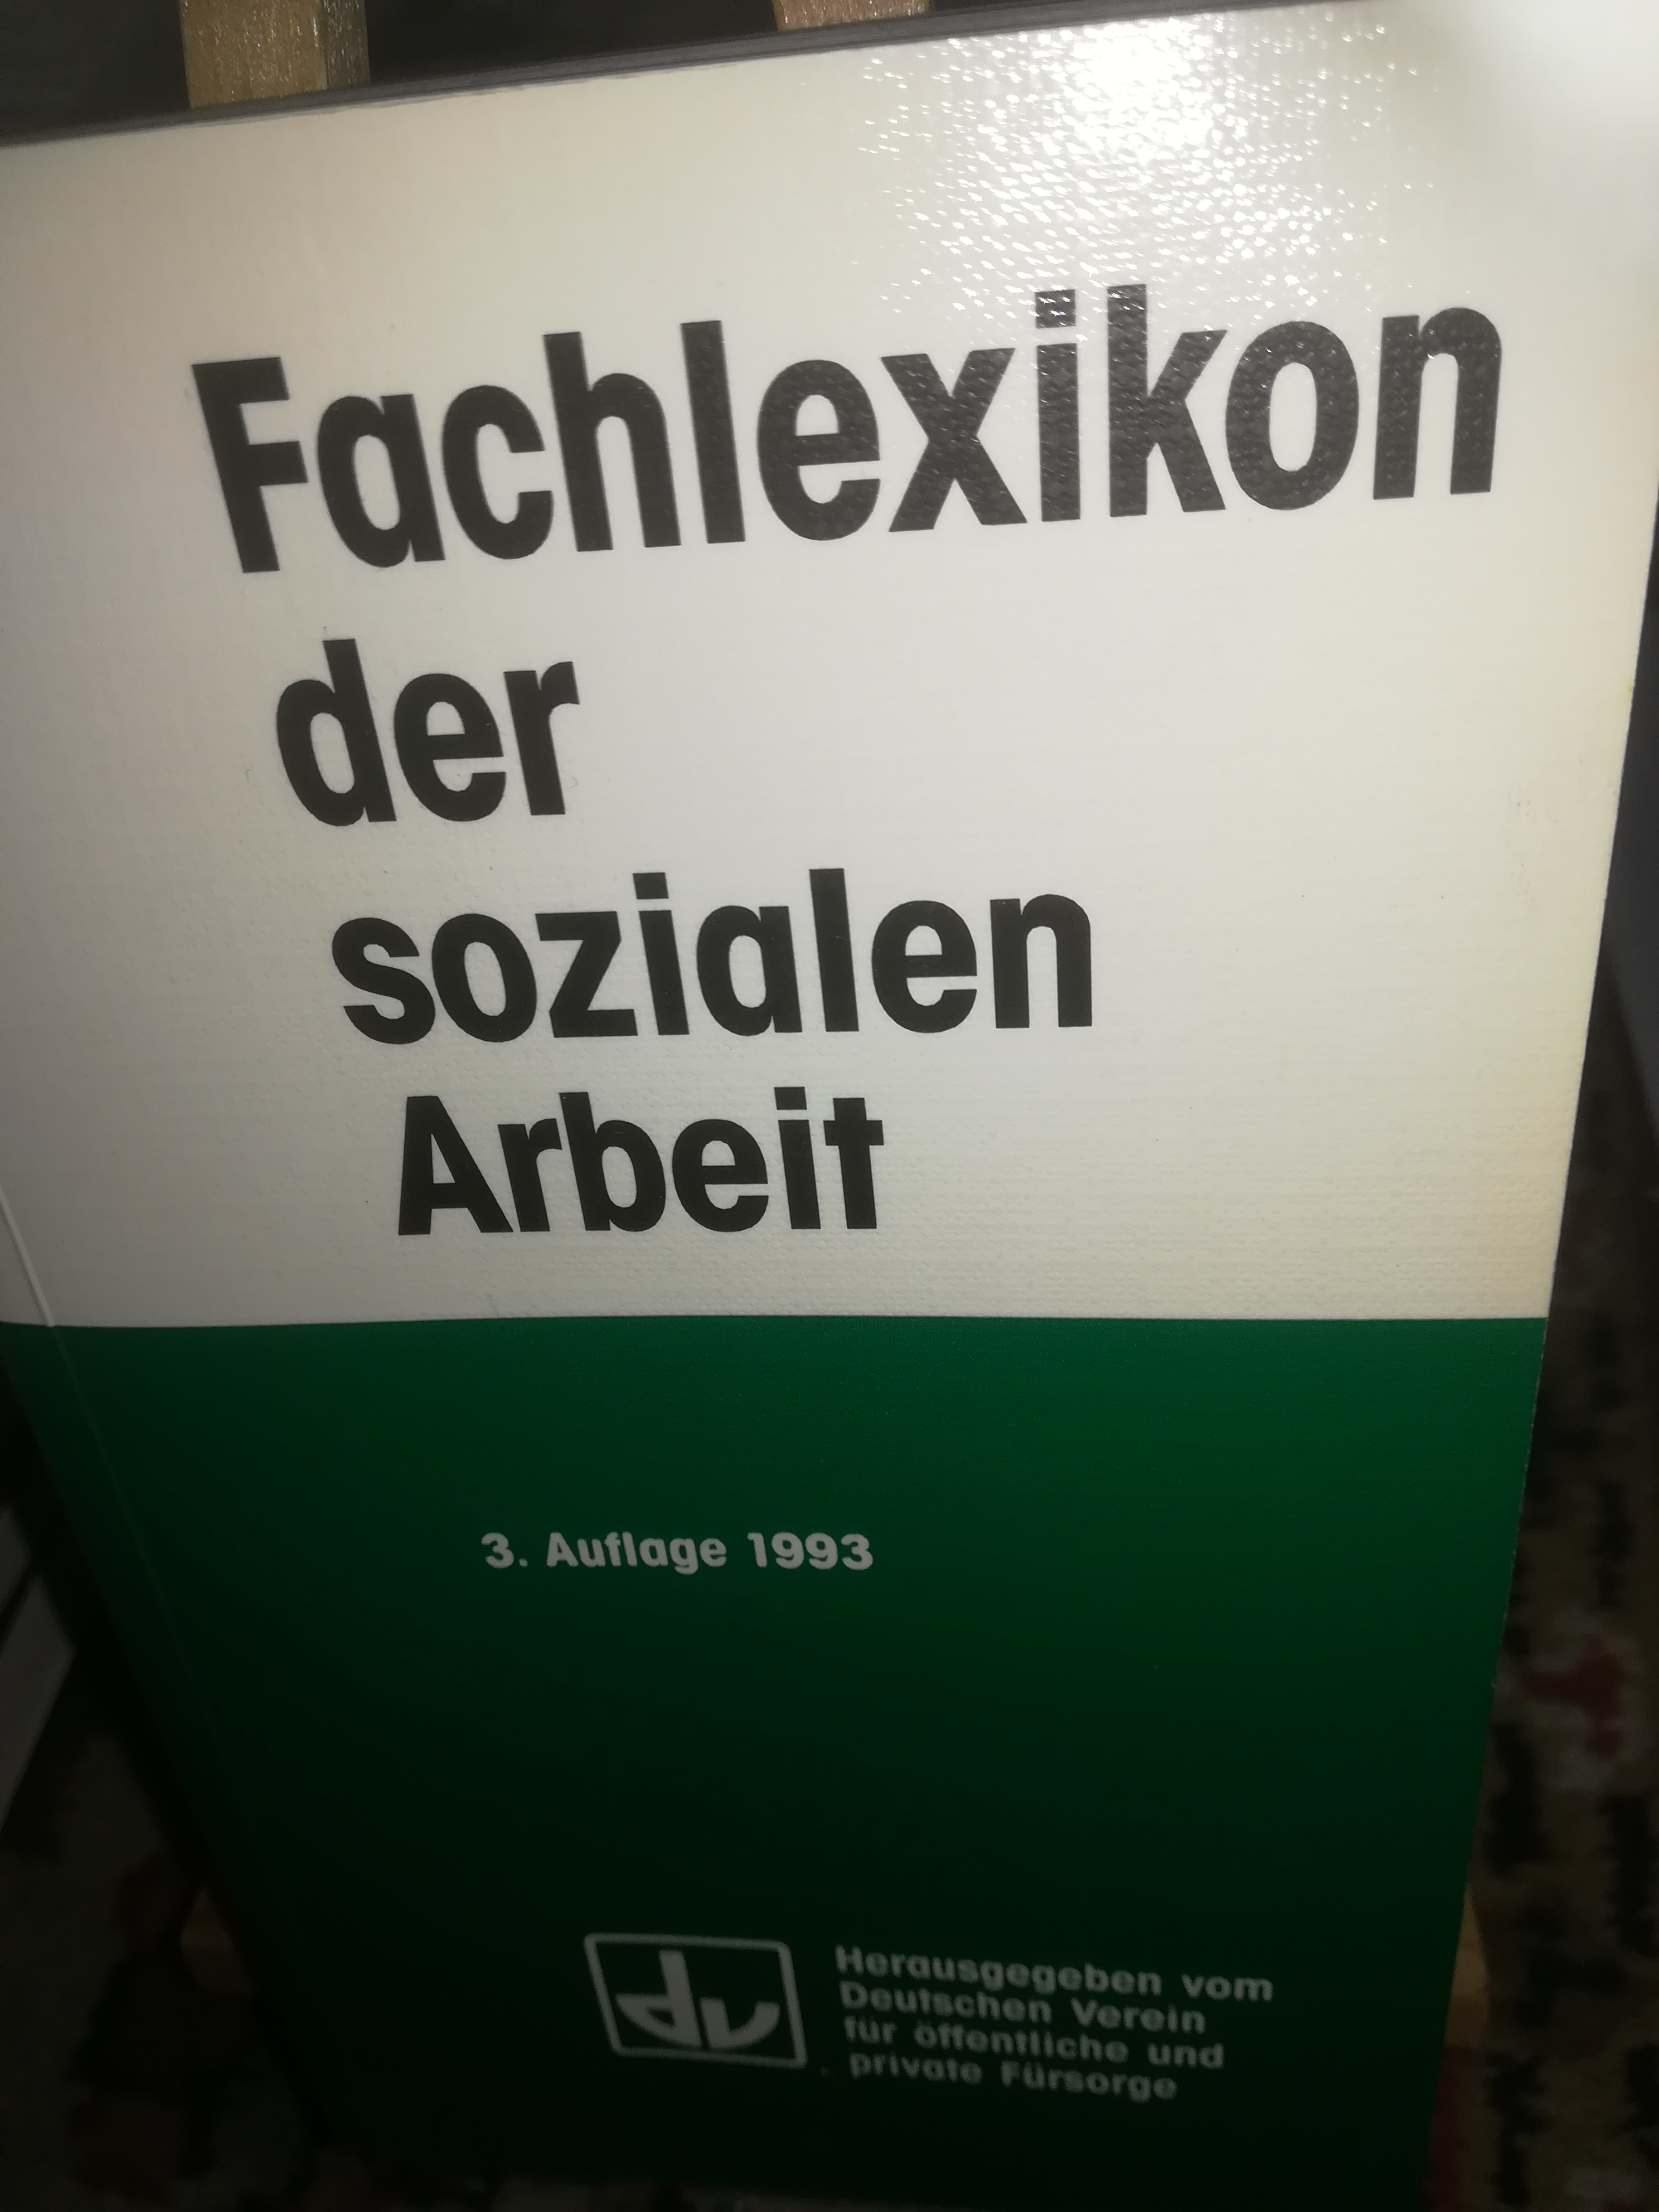 Fachlexikon der sozialen Arbeit, 3. Auflage 1993 - Deutscher Verein für öffentliche und private Fürsorge HRSG